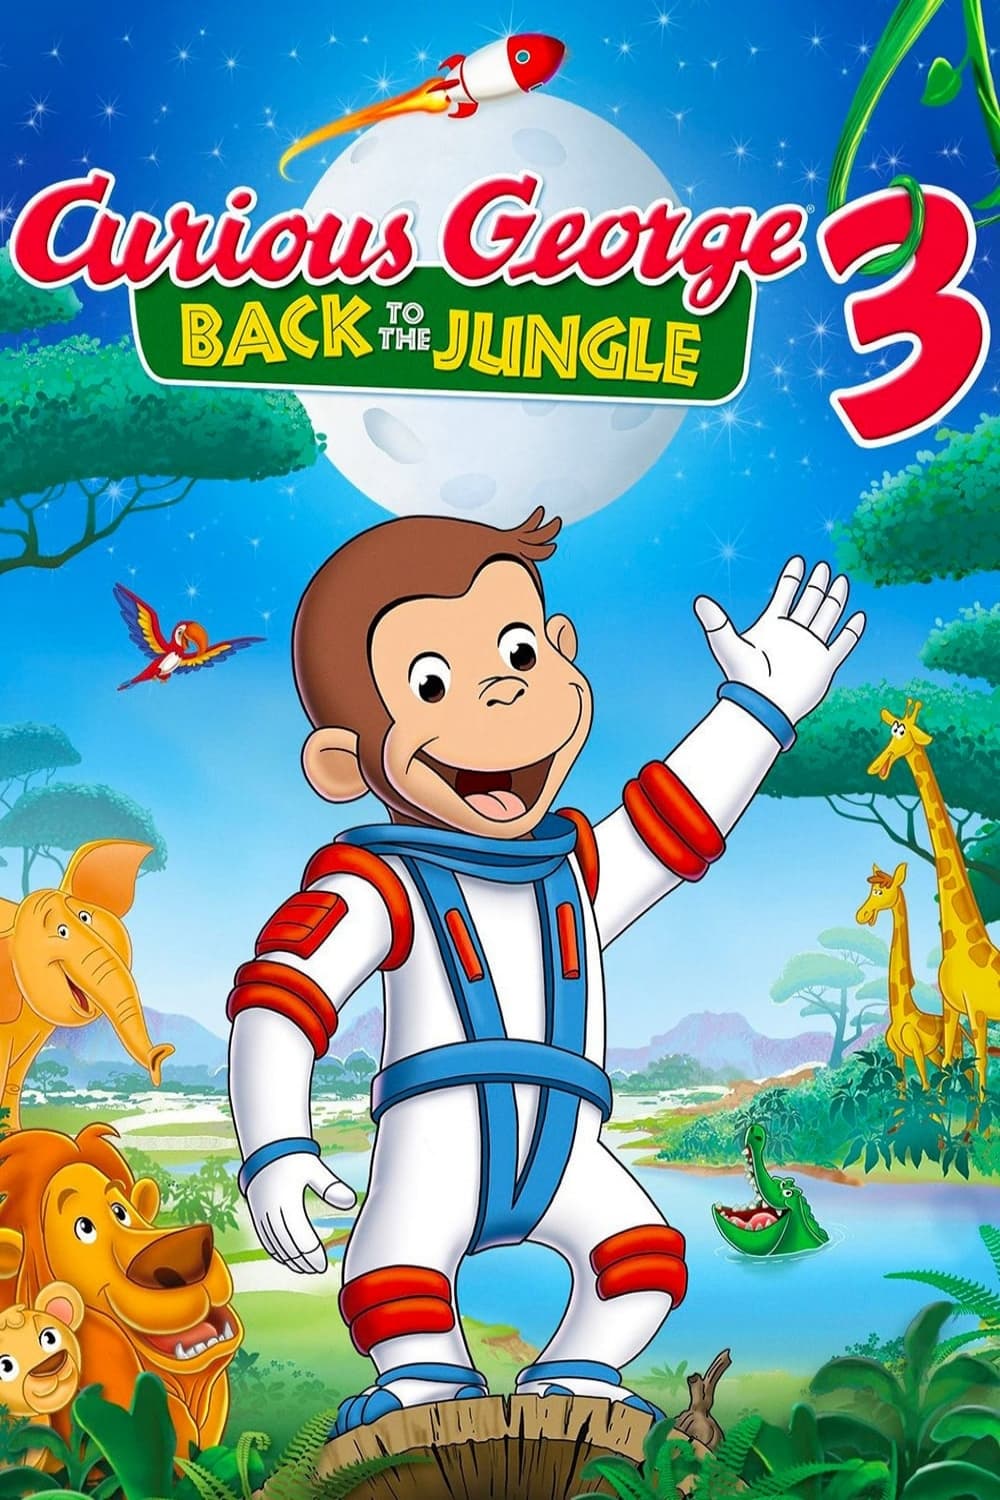 Georges le petit curieux 3 : Retour dans la jungle (2015)